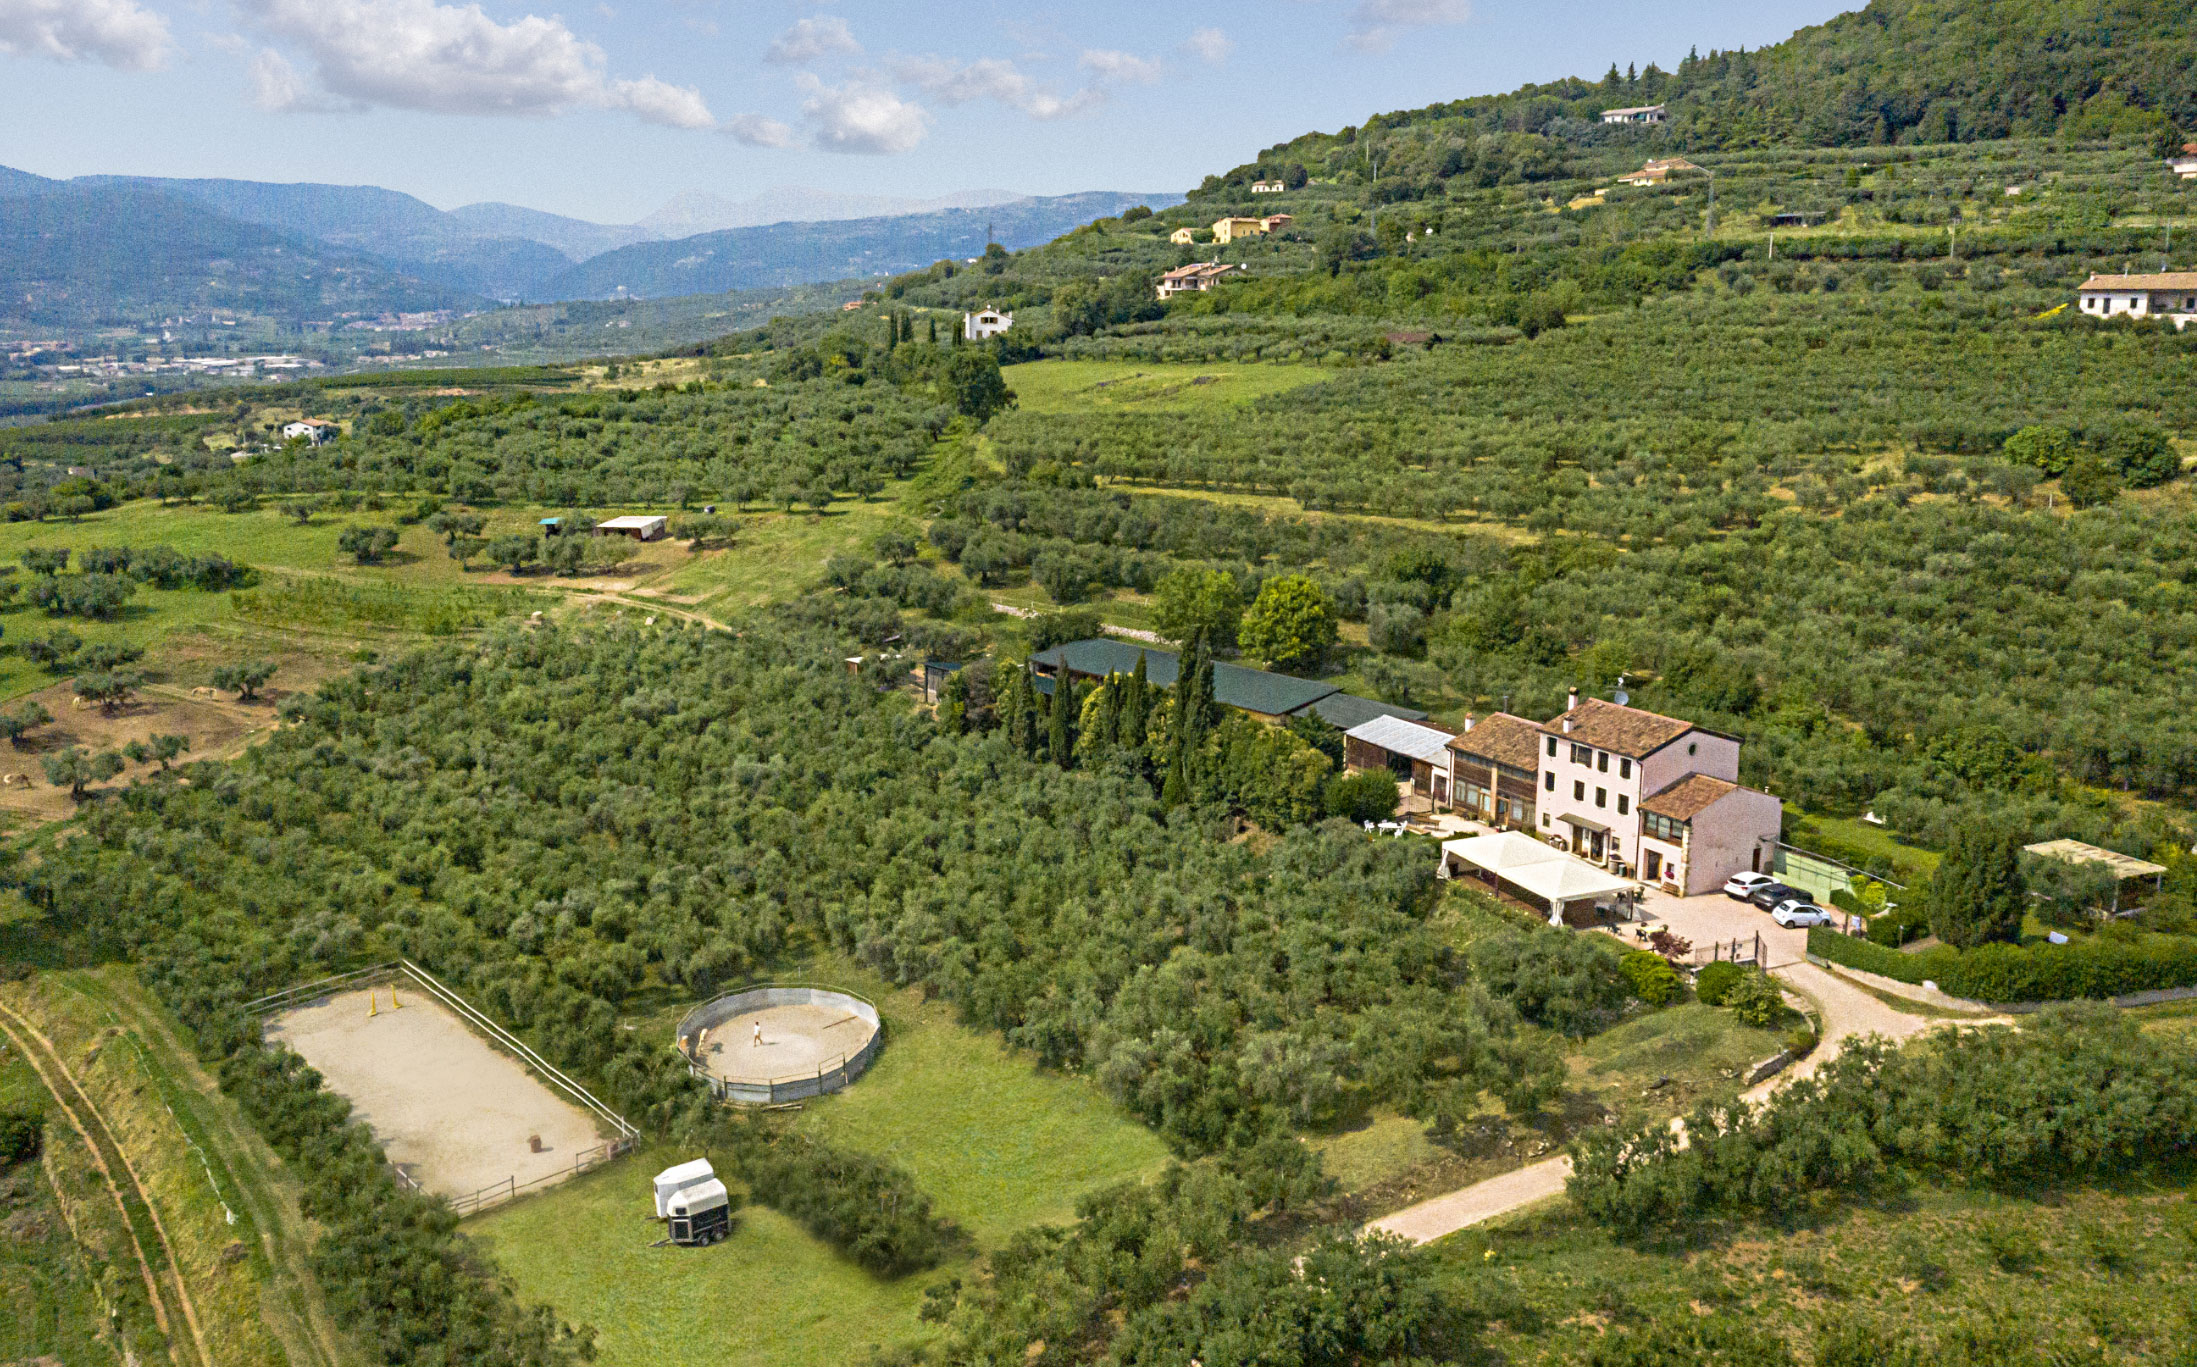 Veduta panoramica dell'agriturismo Casa Rosa sulle colline di Verona, ripresa con un drone dall'alto